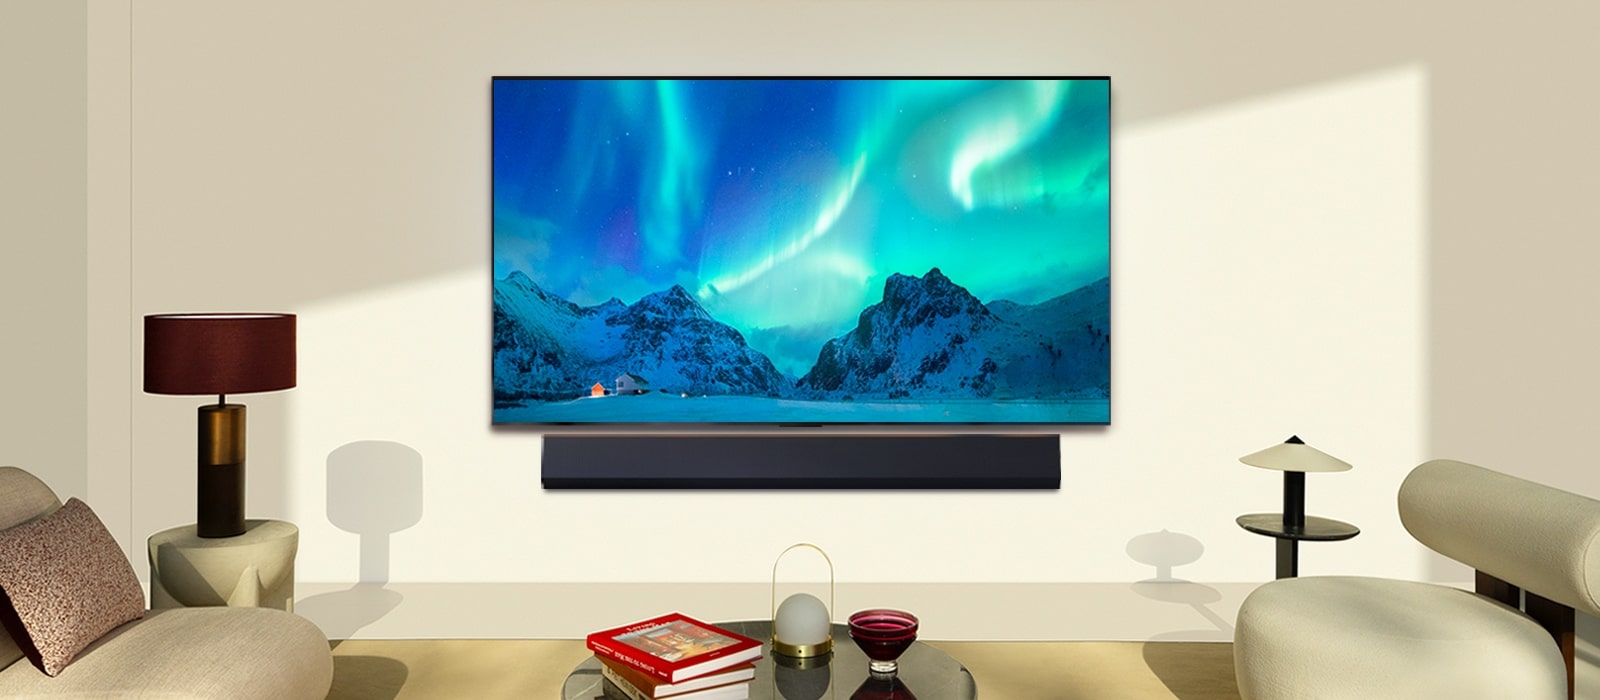 LG OLED TV i soundabr LG w nowoczesnej przestrzeni dziennej. Obraz zorzy polarnej wyświetlany jest z idealnym poziomem jasności.